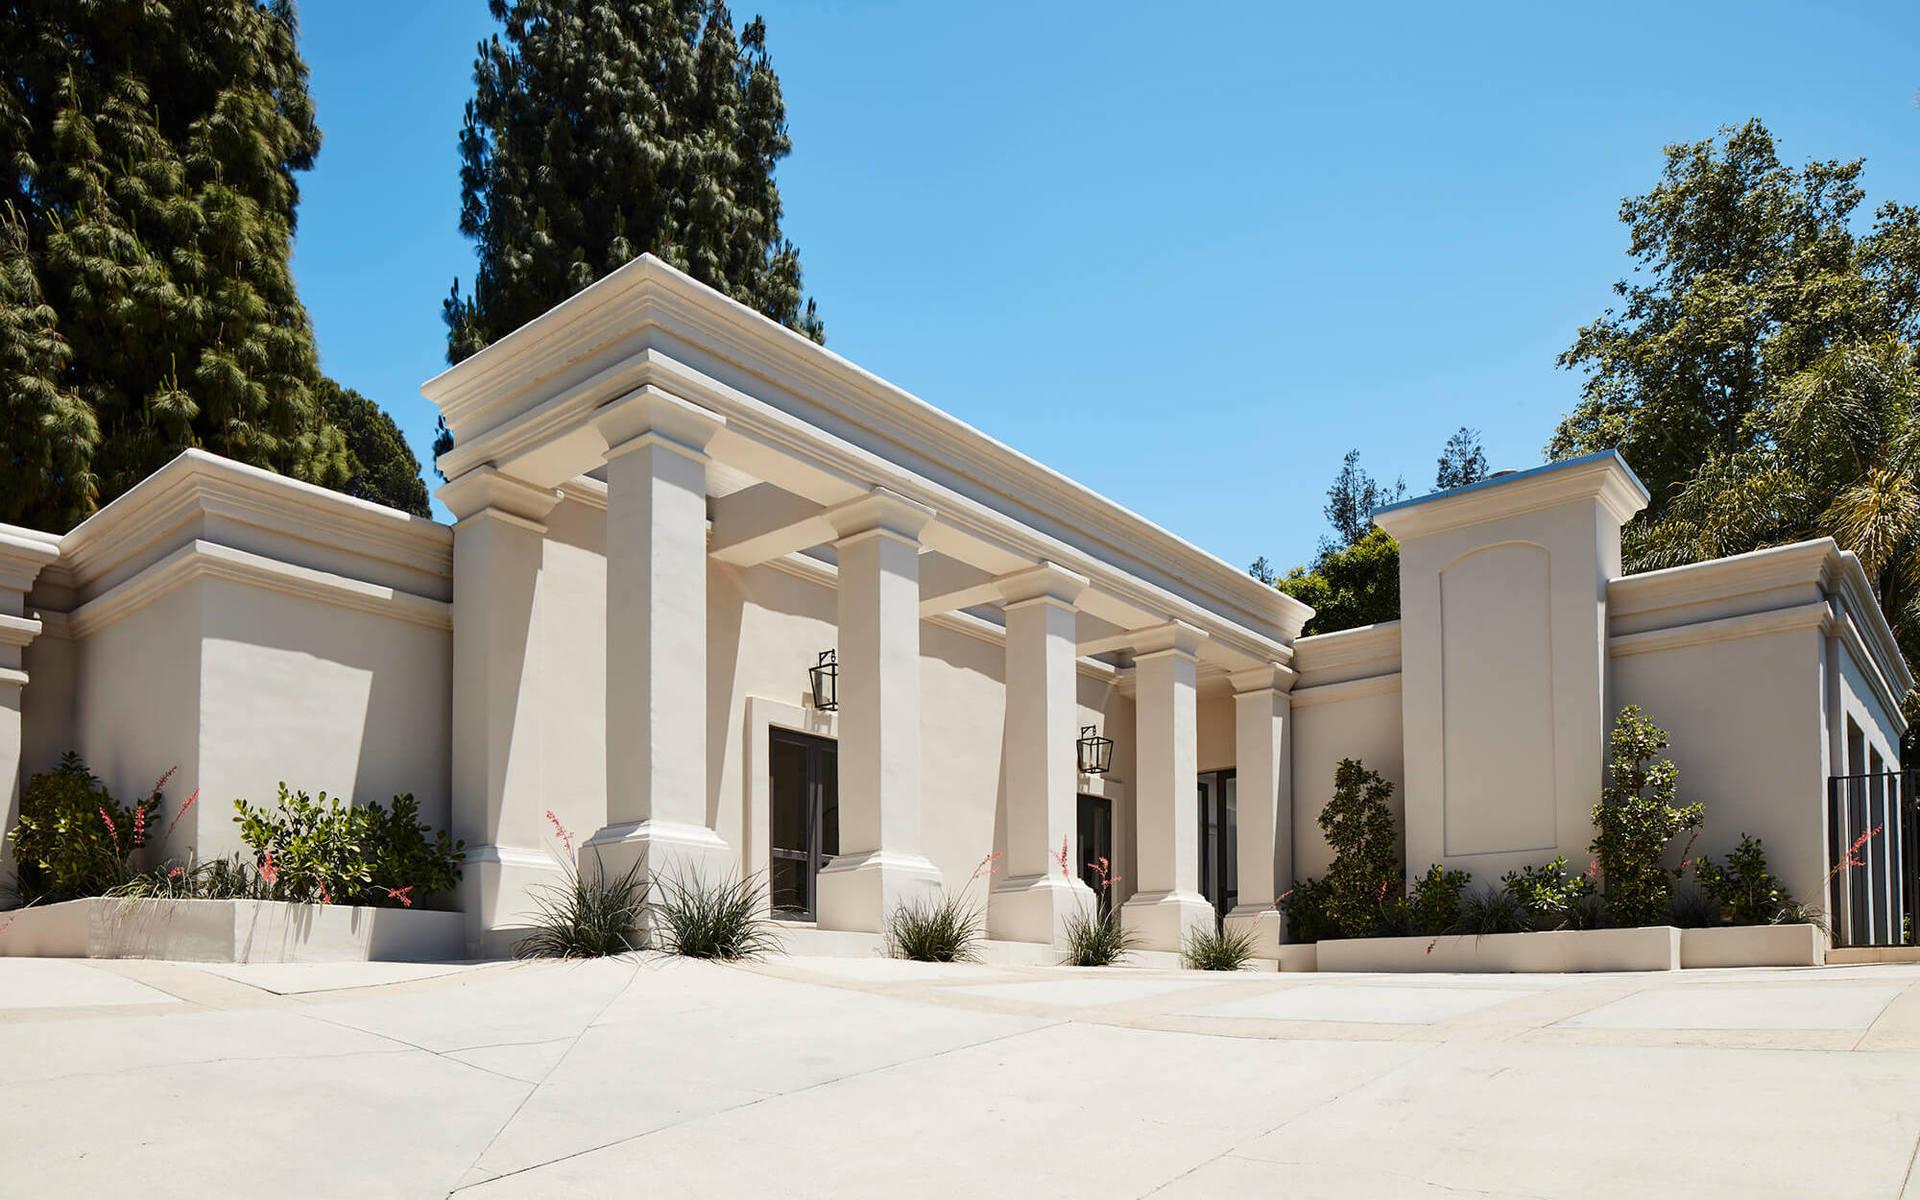 Stjärnornas nya hus har det klassiska postnumret 90210 och ligger därmed beläget i mytomspunna Beverly Hills.